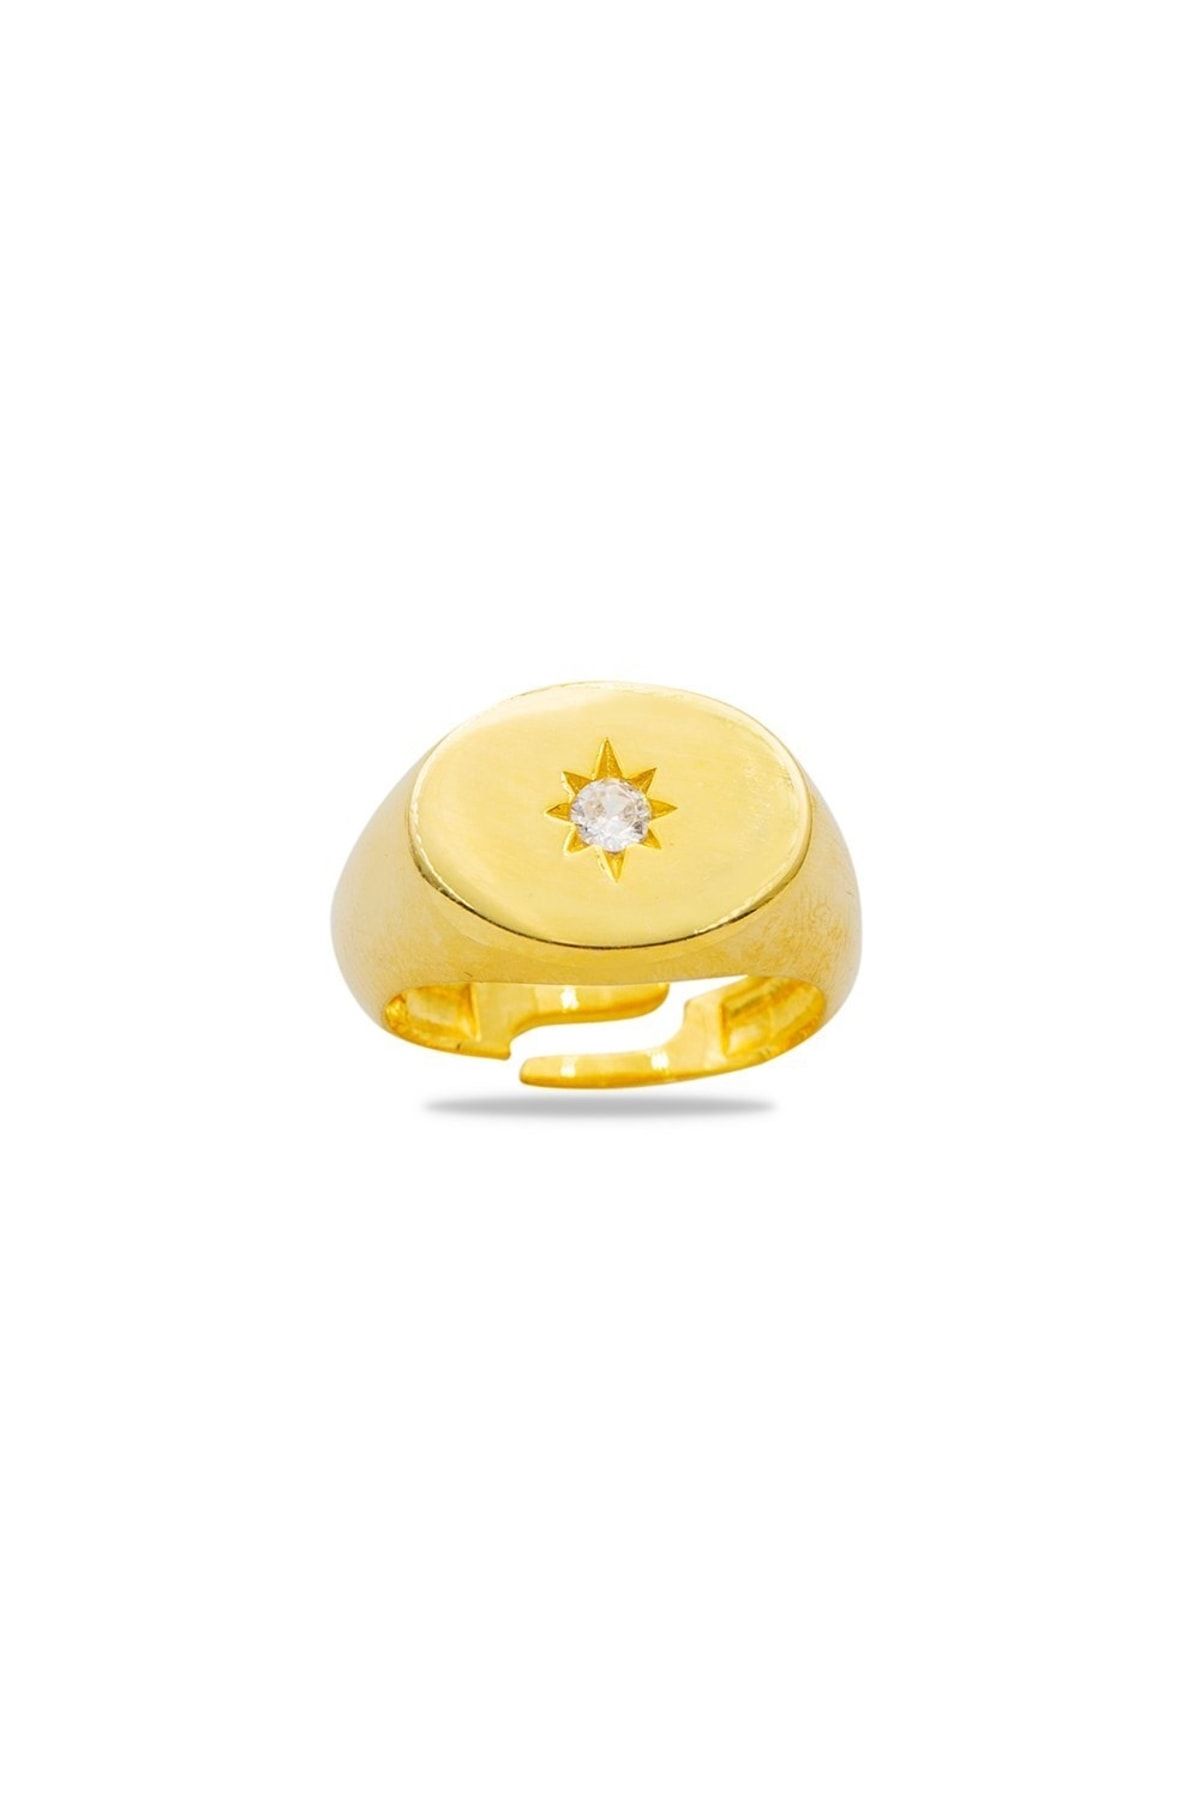 Tesbihane Beyaz Zirkon Taşlı Yıldız Detaylı Gold Renk Free Size 925 Ayar Gümüş Kadın Tektaş Yüzük